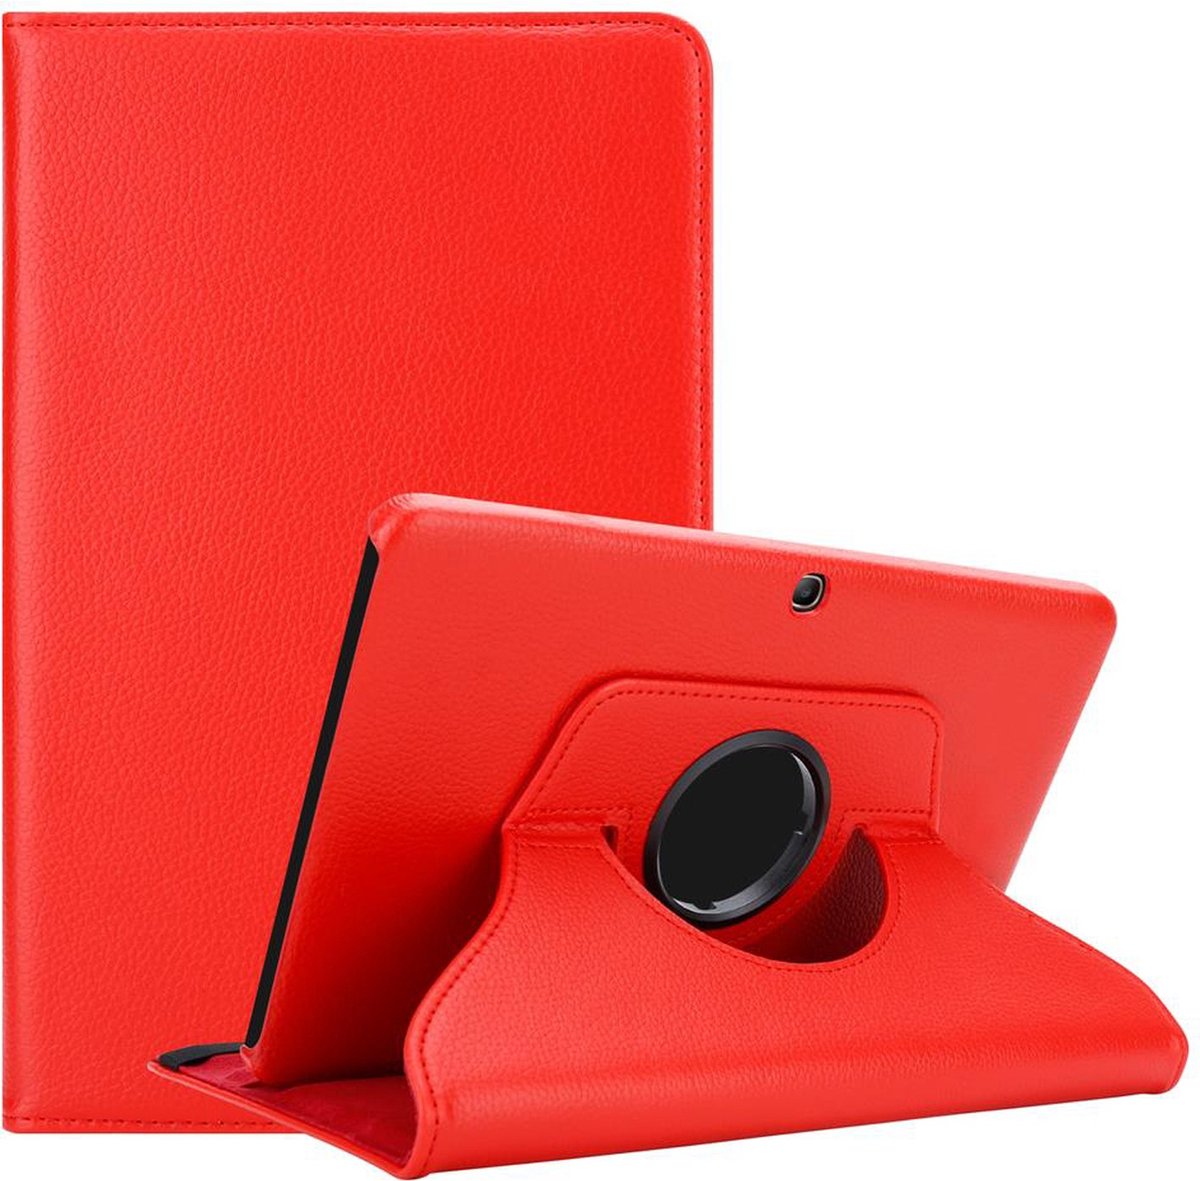 Cadorabo Tablet Hoesje voor Samsung Galaxy Tab 4 (10.1 inch) in KLAPROOS ROOD - Beschermhoes ZONDER auto Wake Up, met stand functie en elastische band sluiting Book Case Cover Etui